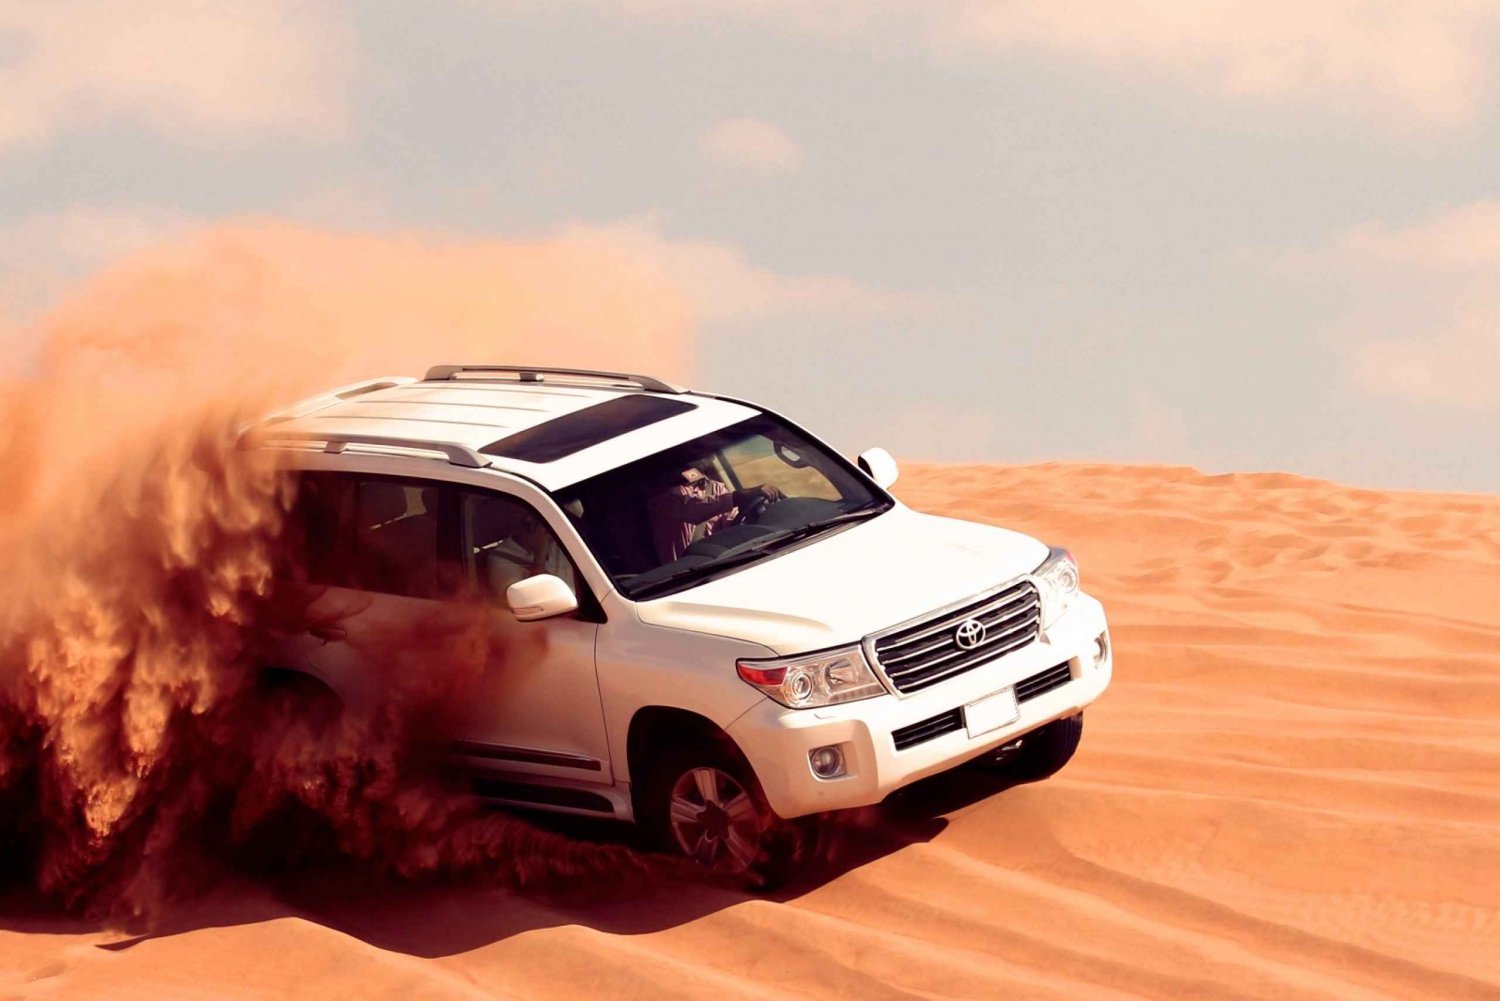 Dubai: Safari i röda sanddyner med fyrhjuling, sandboard och kameler